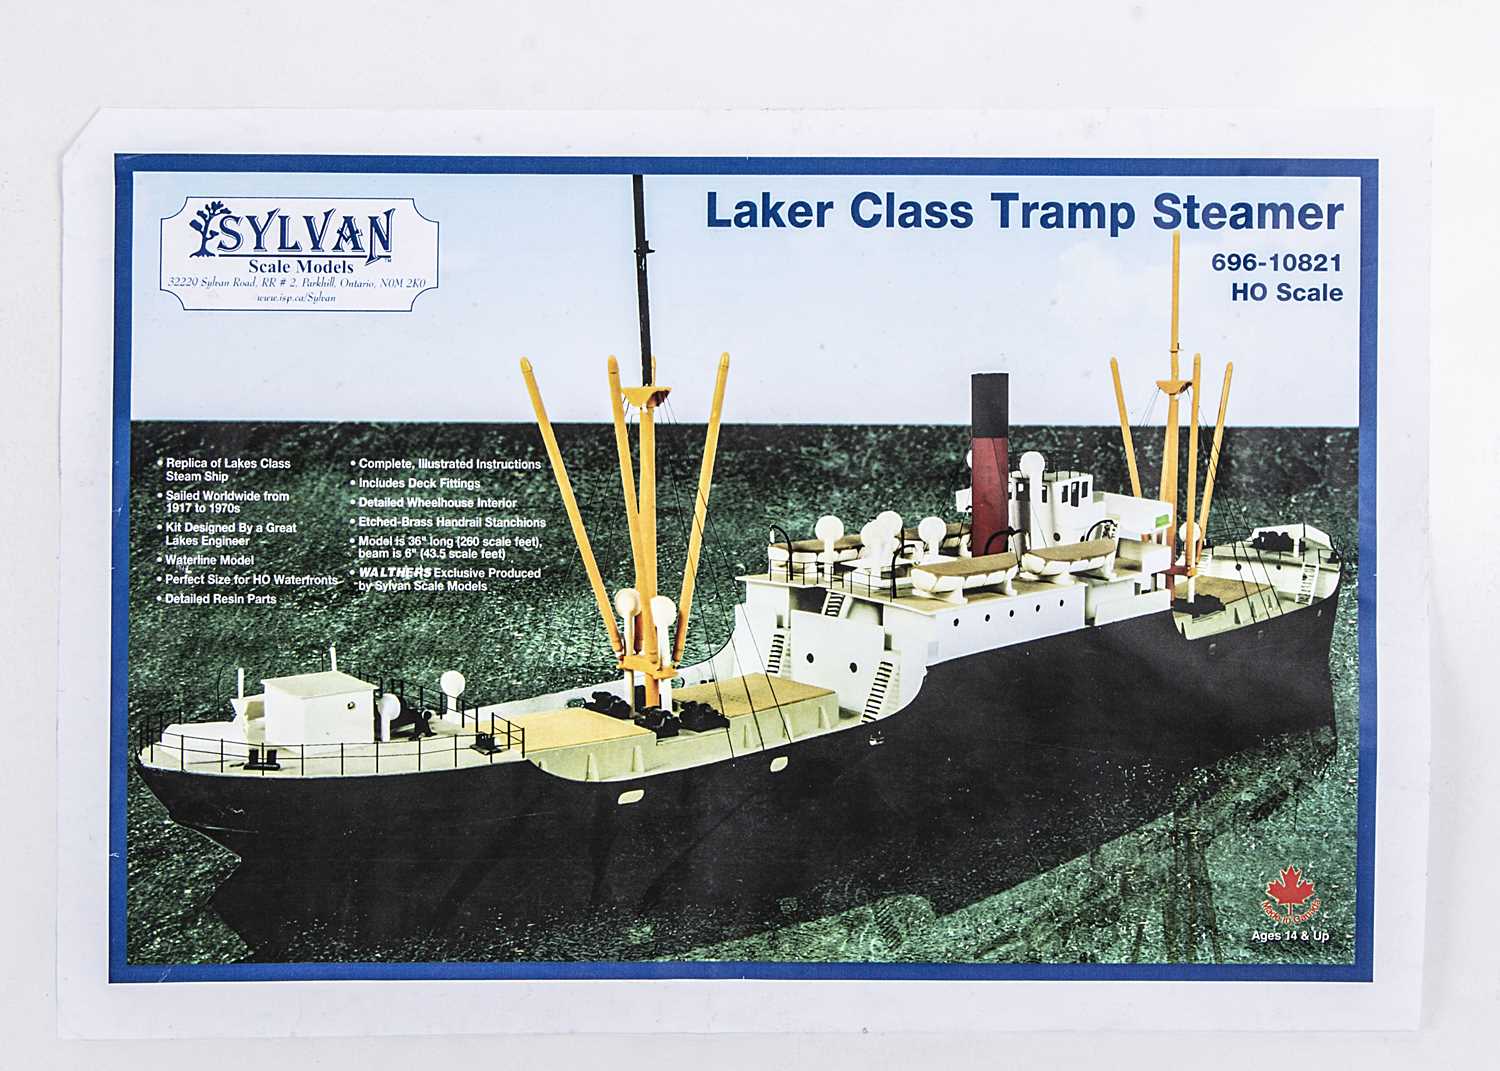 Lot 780 - Sylvan Scale Models HO Scale Laker Class Tramp Steamer